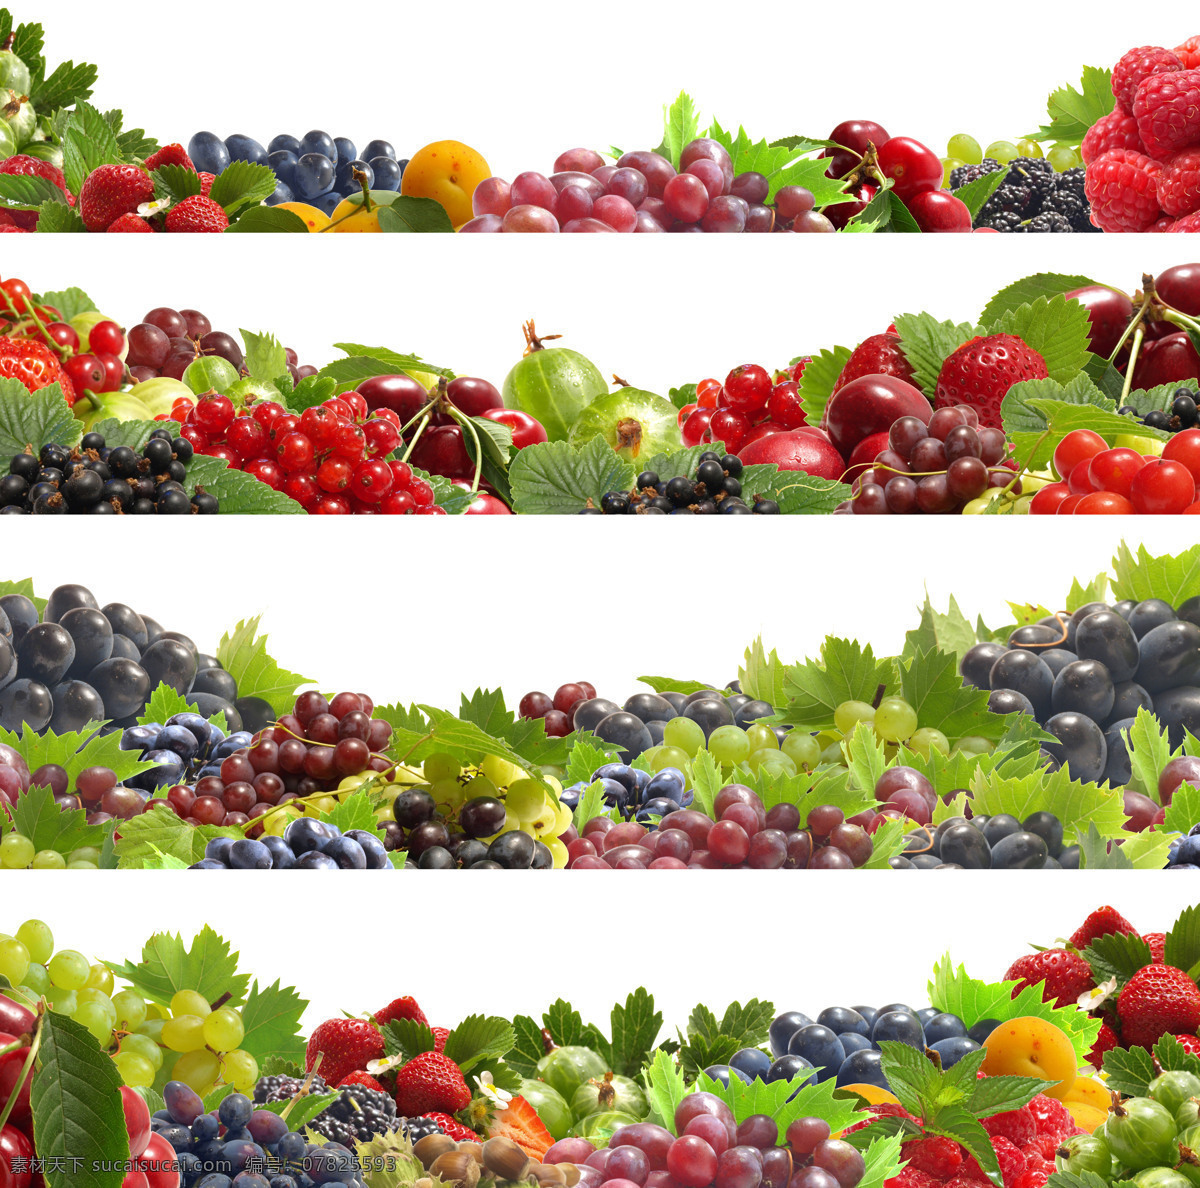 水果 背景 新鲜水果 果实 水果背景 边框背景 葡萄 草莓 山楂 覆盆子 水果图片 餐饮美食